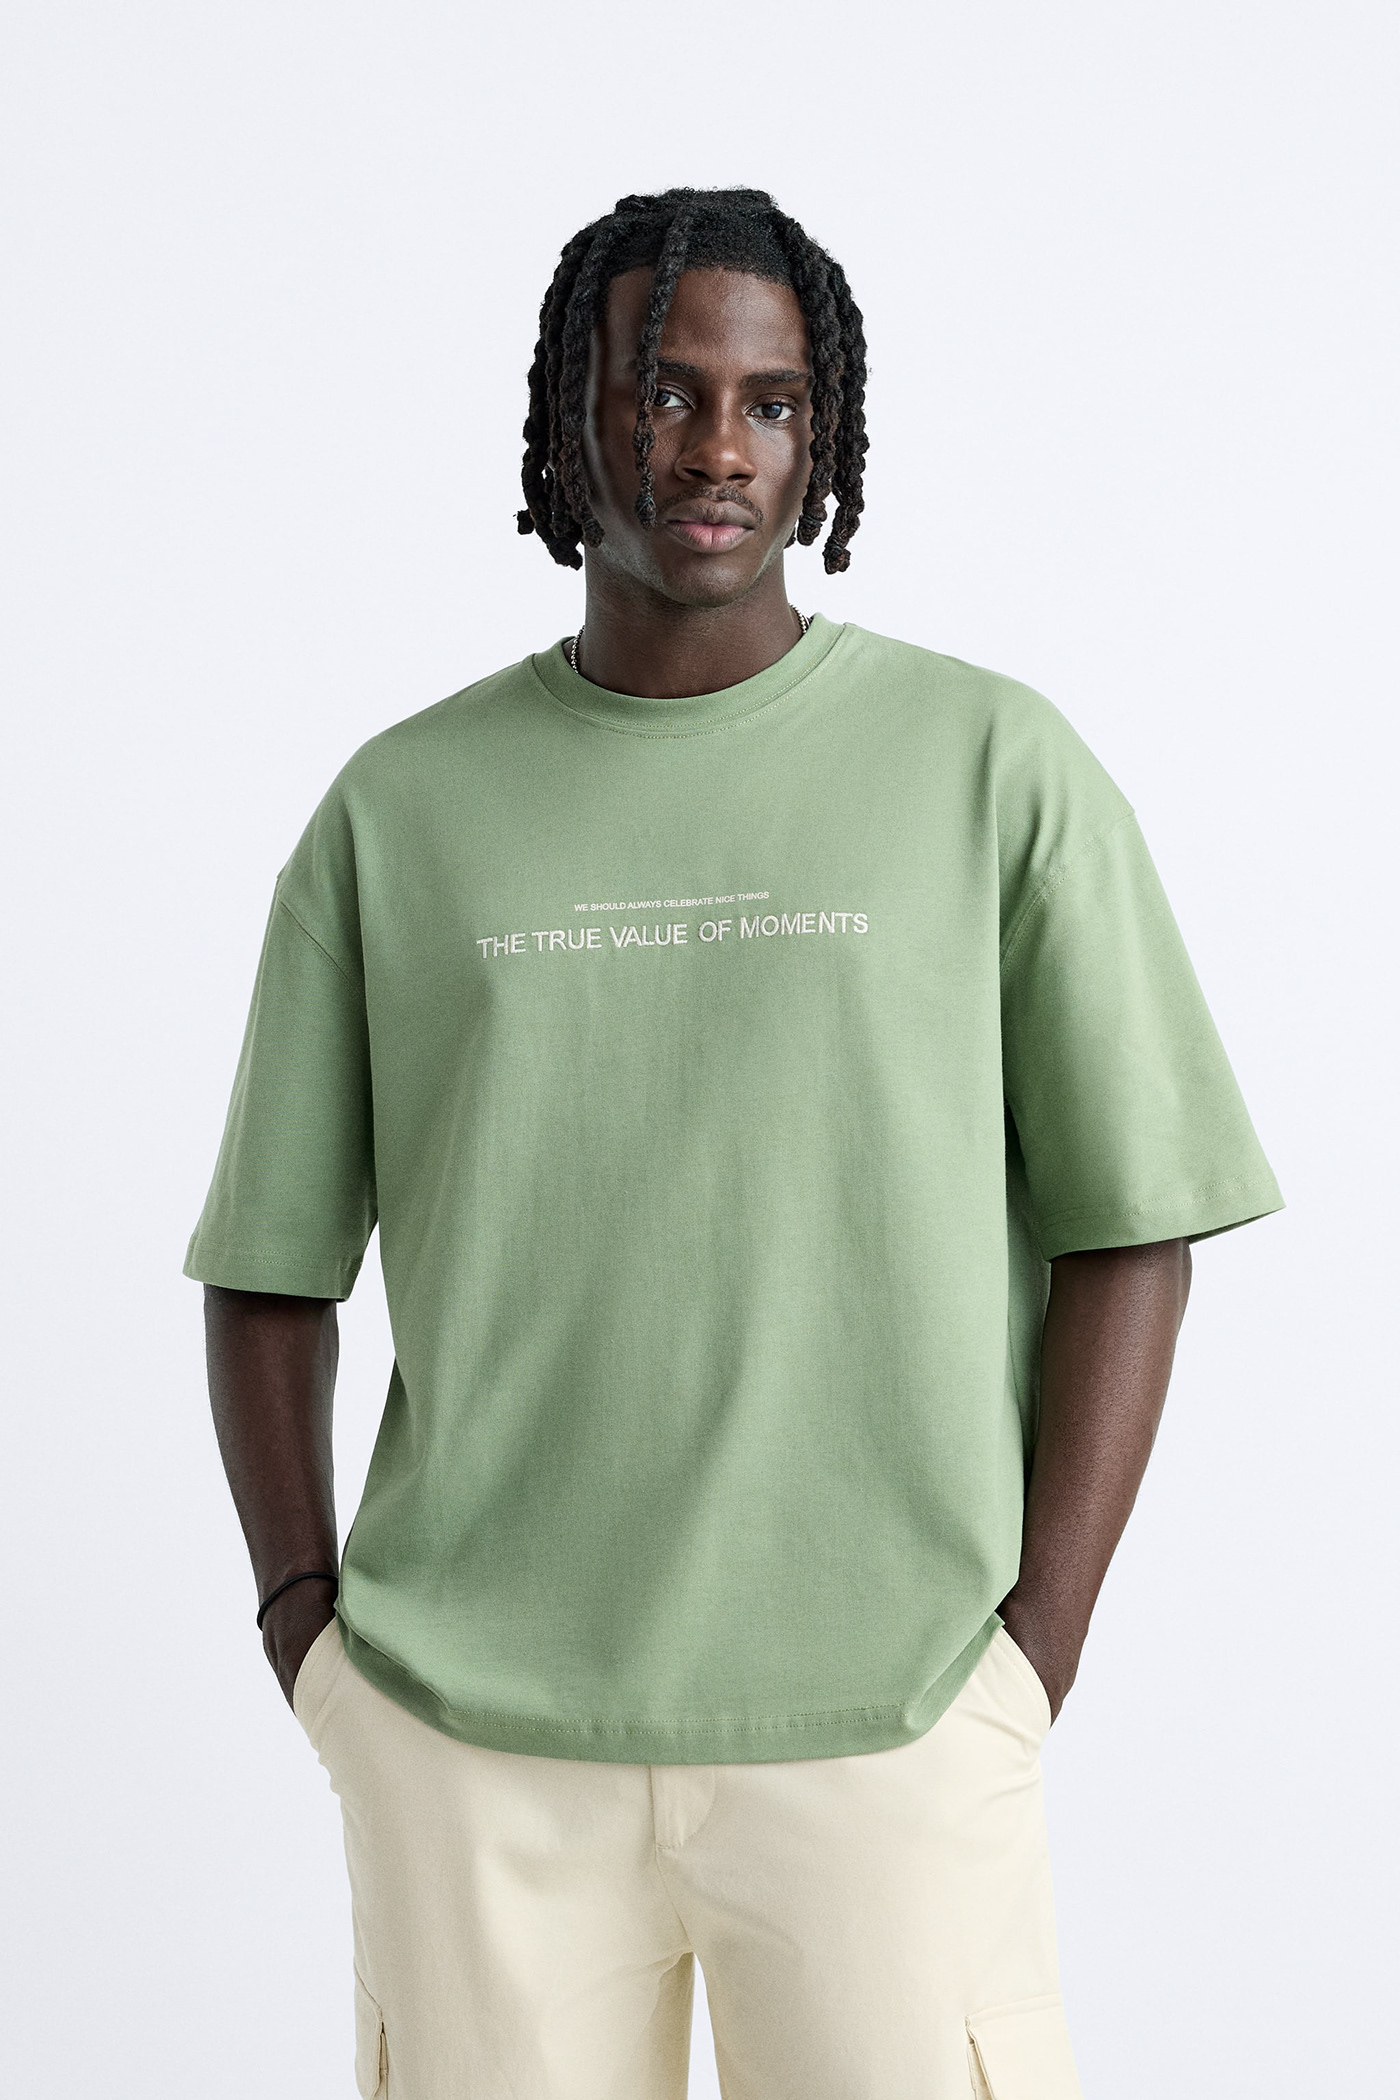 Fashion  Clothing apparel tshirt streetwear t-shirt Tshirt Design typography  